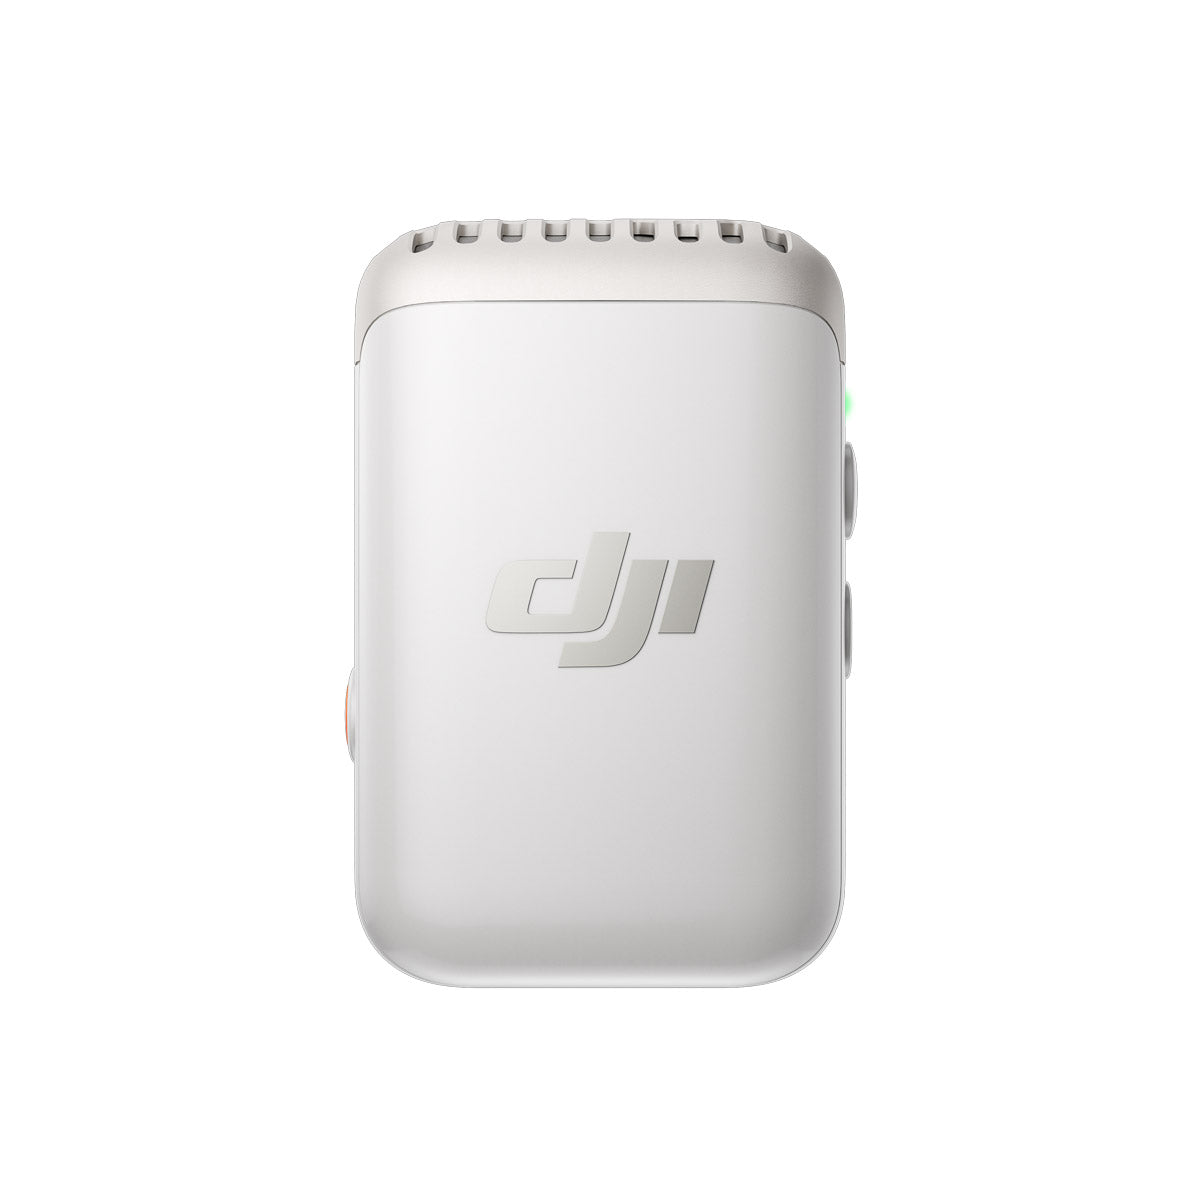 DJI Mic 2 - Transmitter (Pearl White)